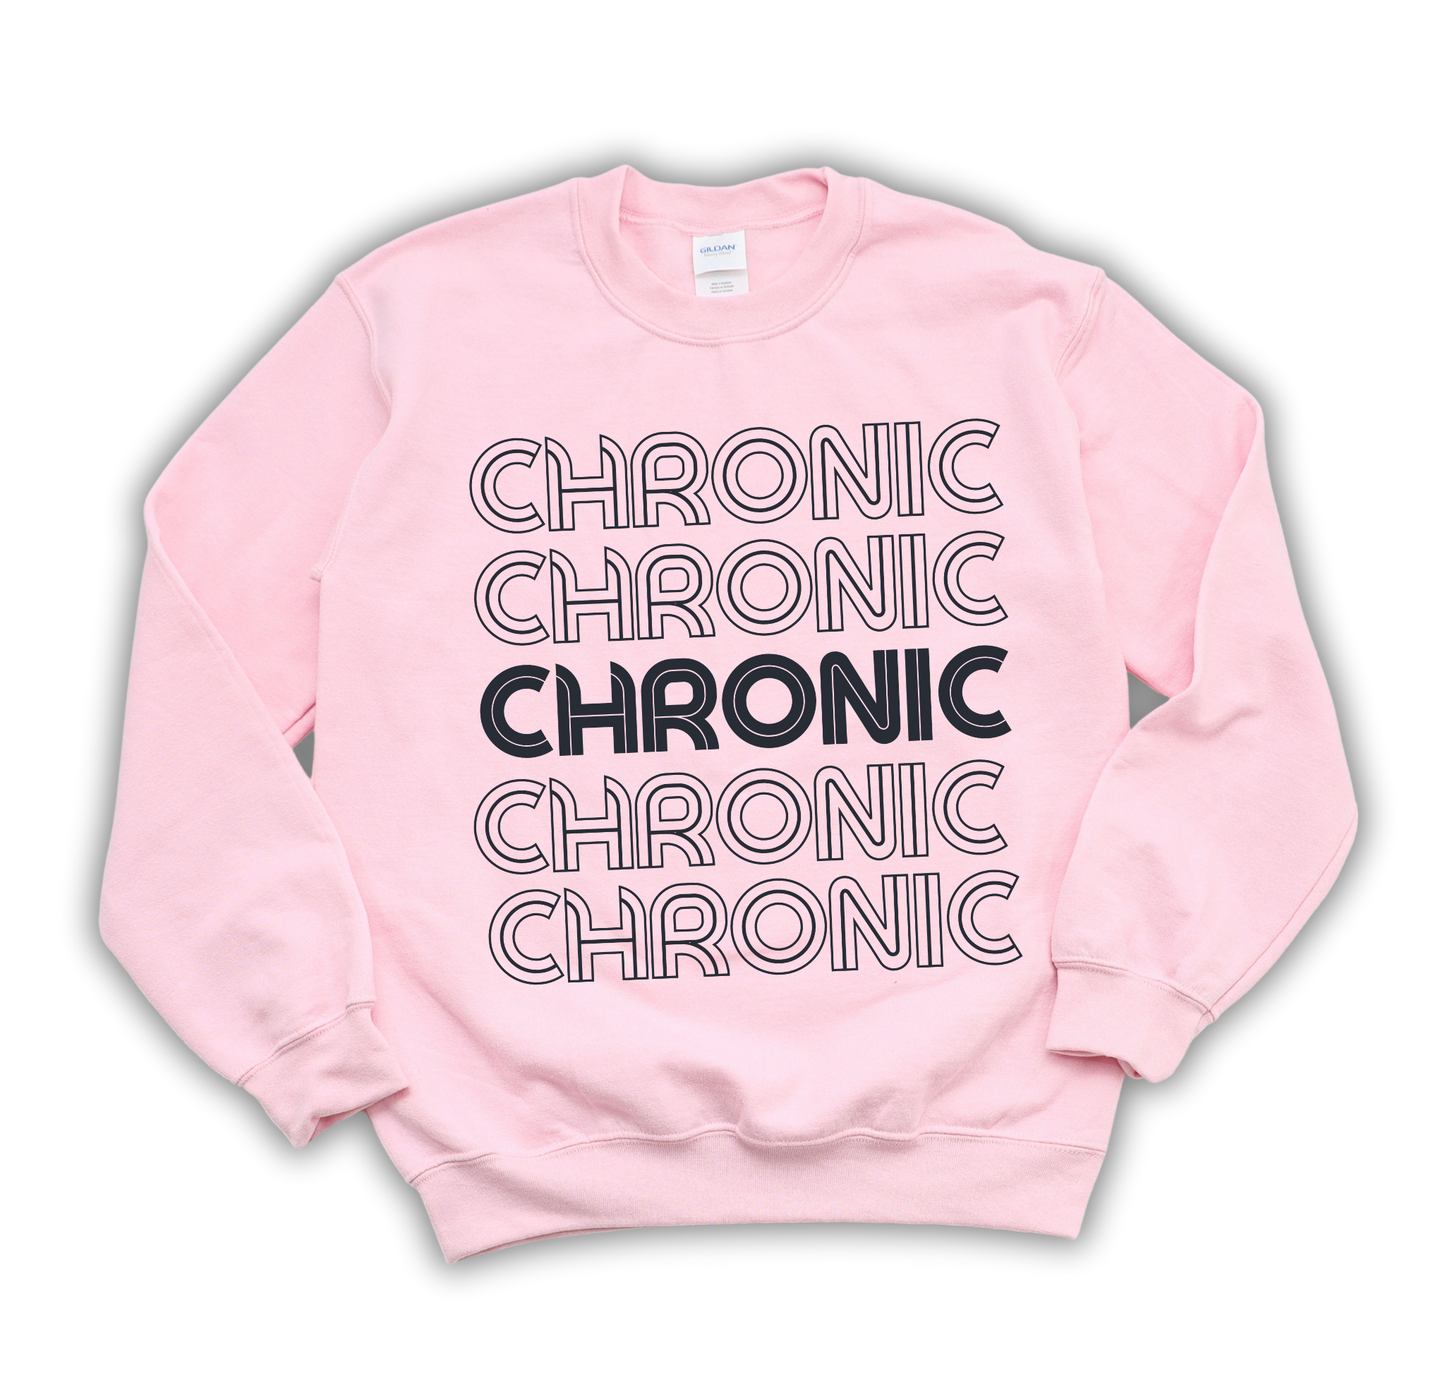 Chronic Sweatshirt